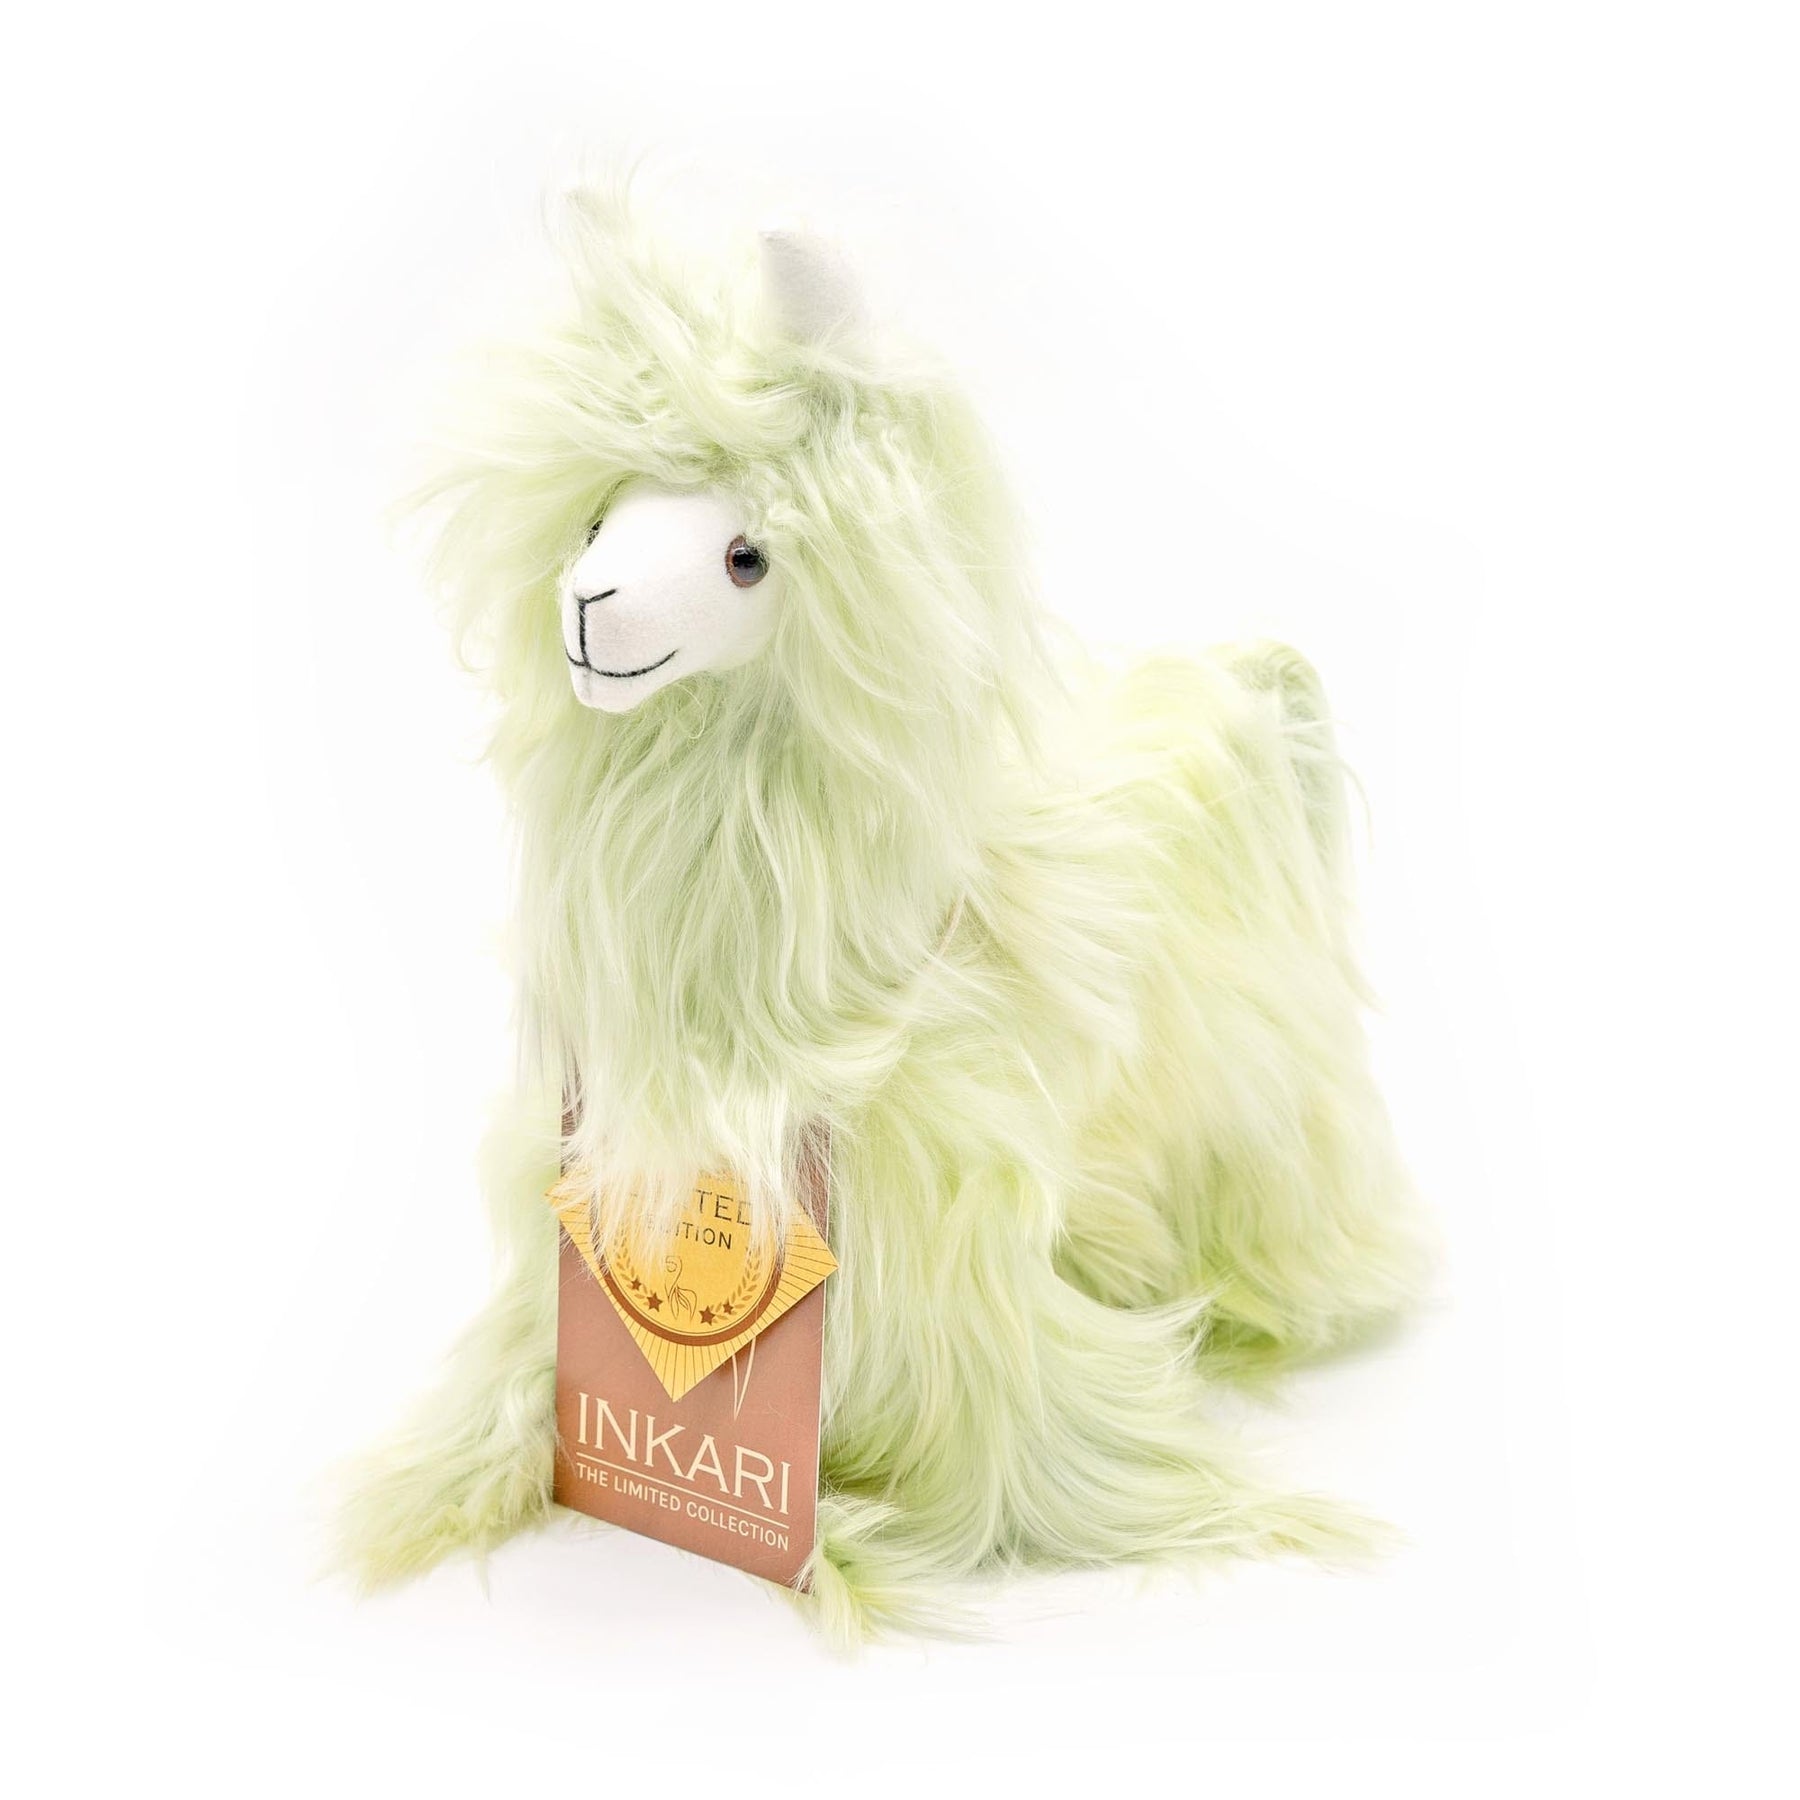 Suri Rainbow - Alpaca Stuffed Animal